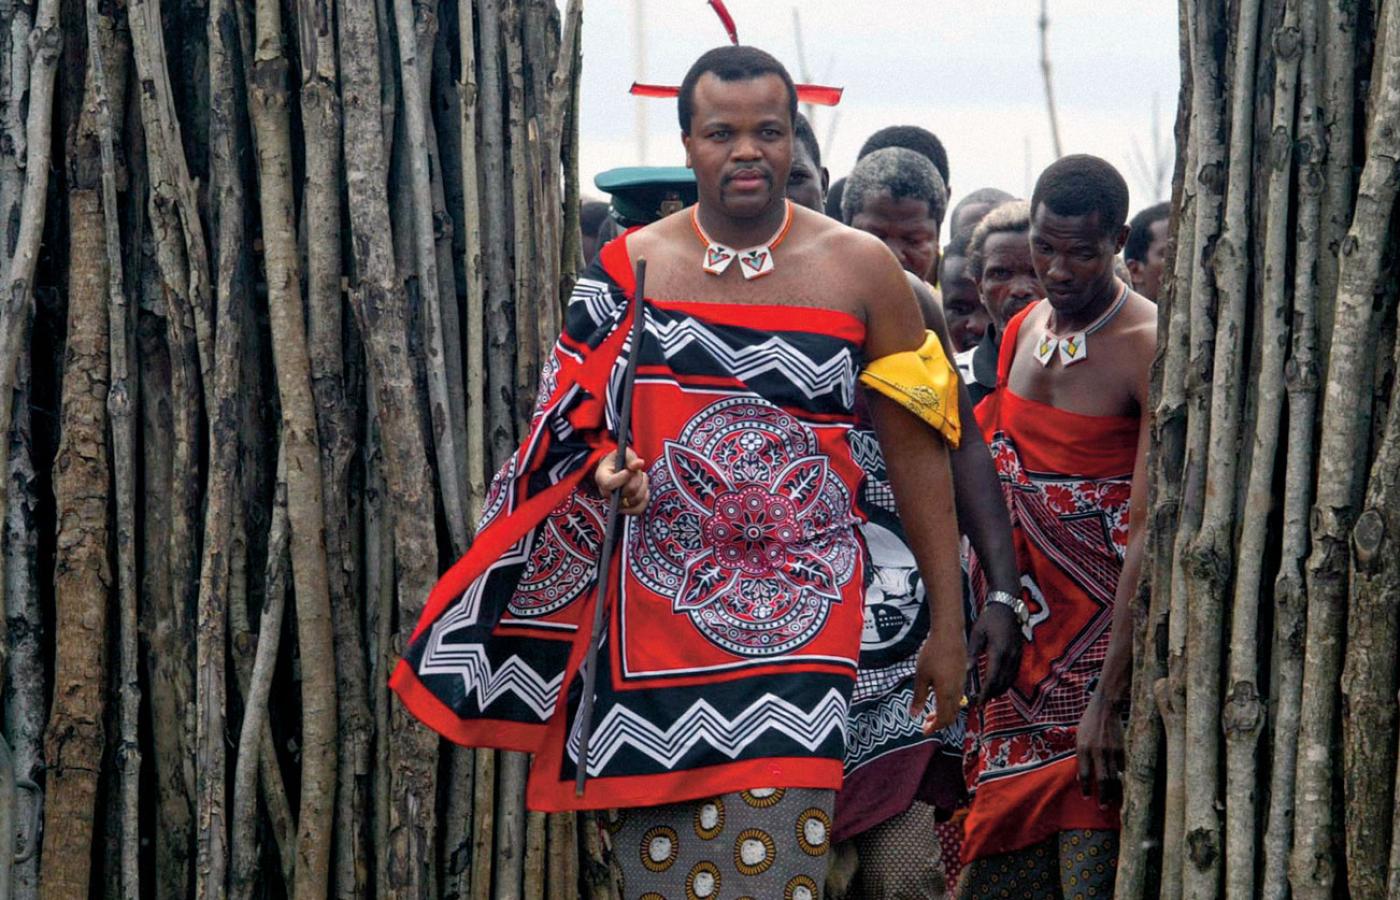 Mswati III rządzi 1,3 mln dusz między RPA a Mozambikiem, jest ostatnim władcą absolutnym w Afryce.